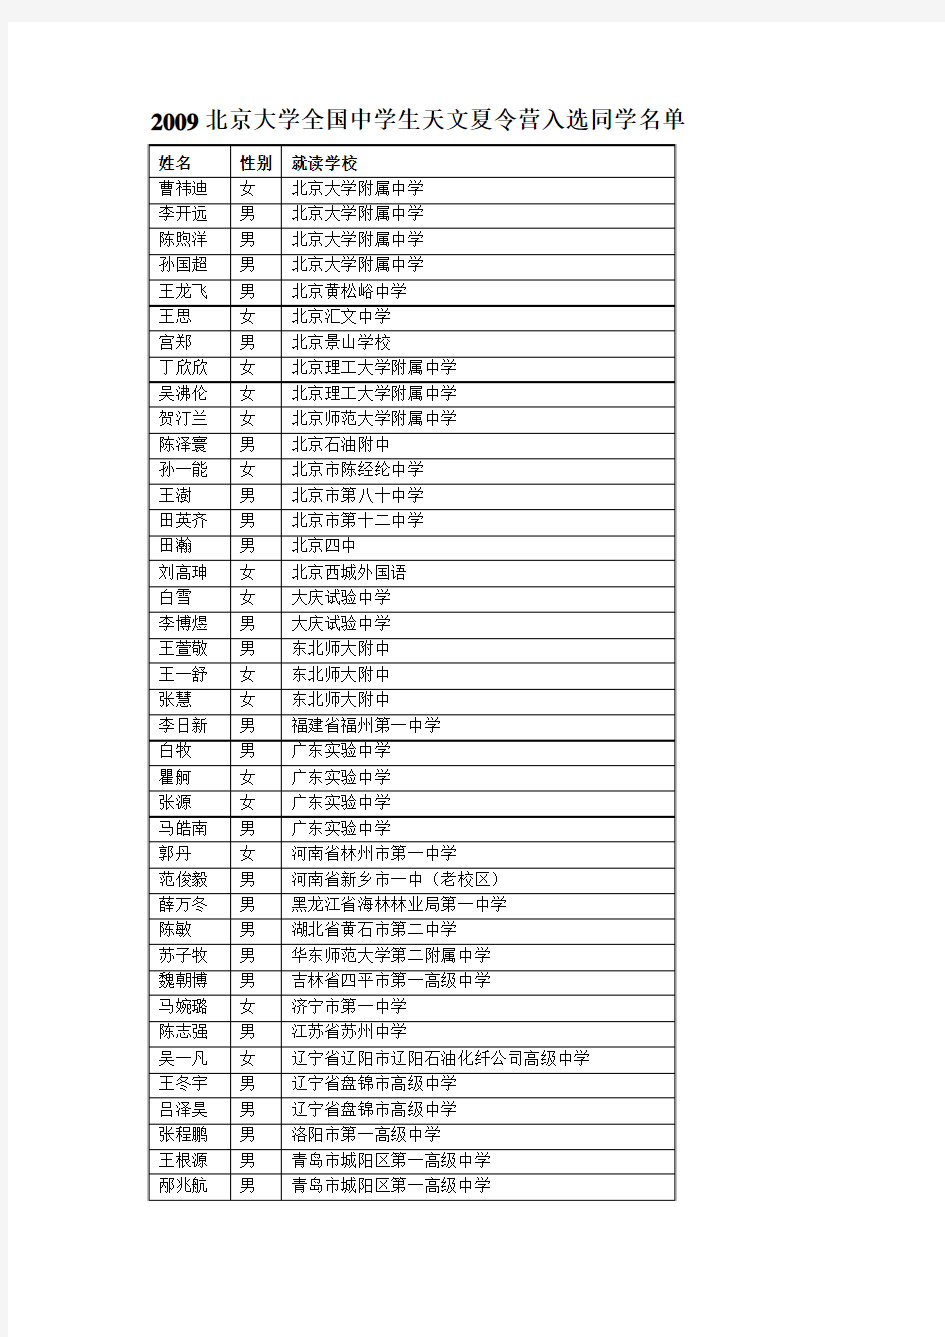 2009北京大学全国中学生天文夏令营入选同学名单